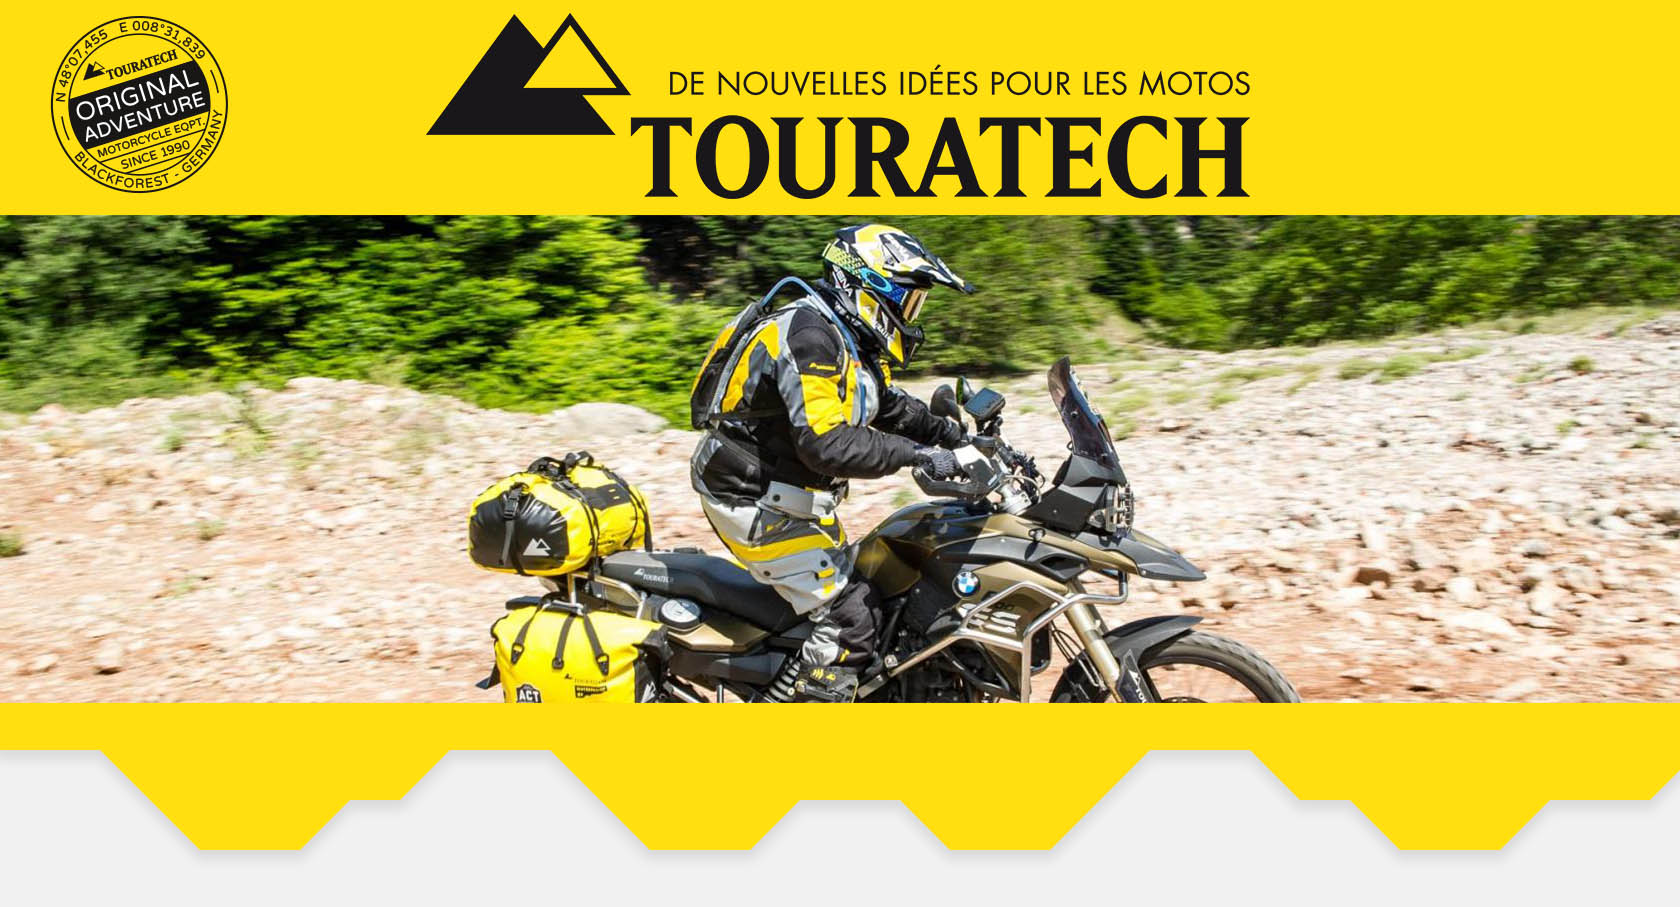 Casque moto, équipement moto, pièces et accessoires moto - www